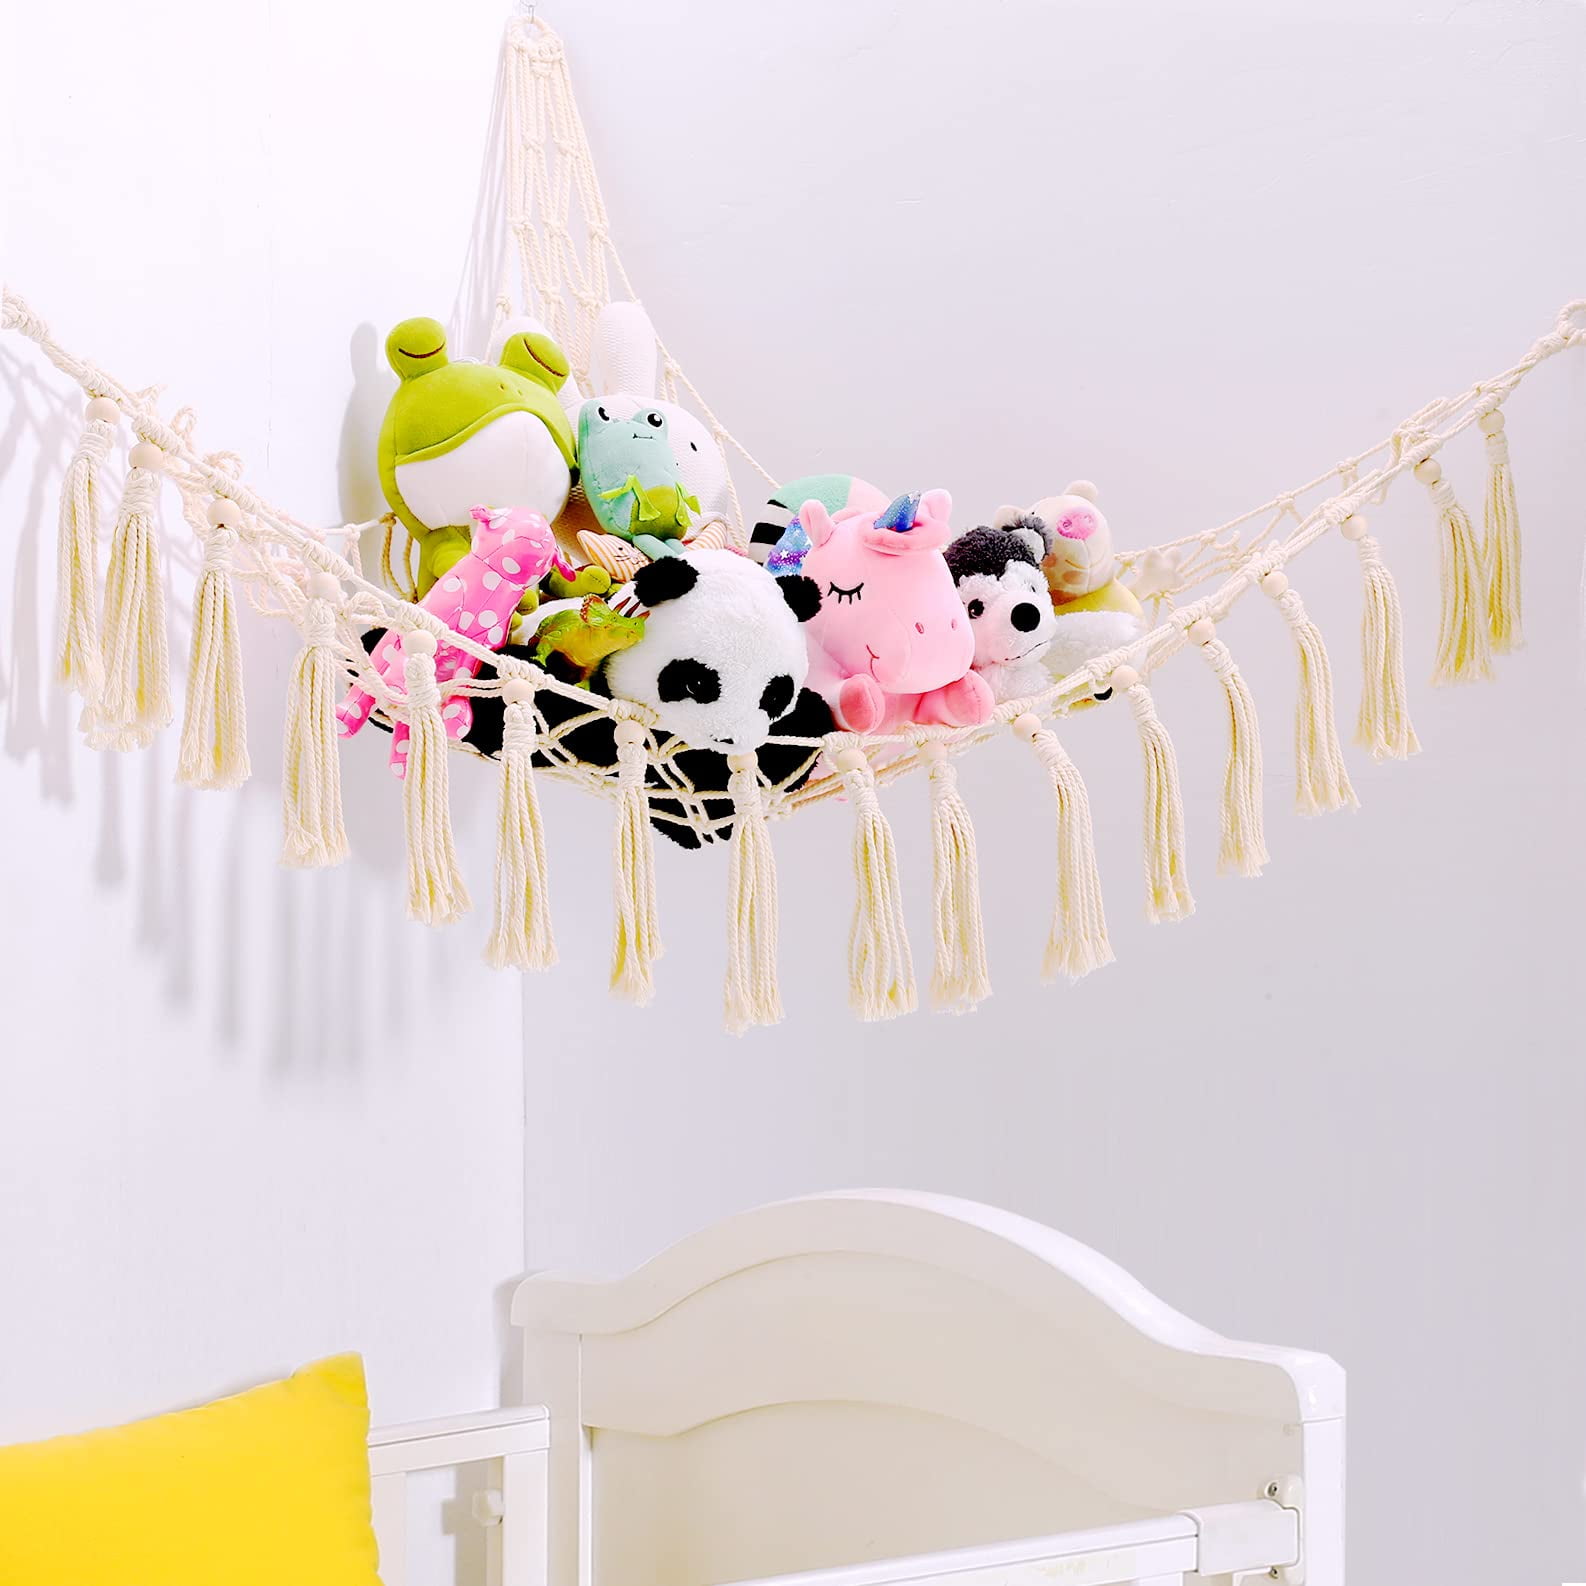 Toy Hammock Net Organizer Corner Stuffed Animals Kids Hanging Storage Bath White 